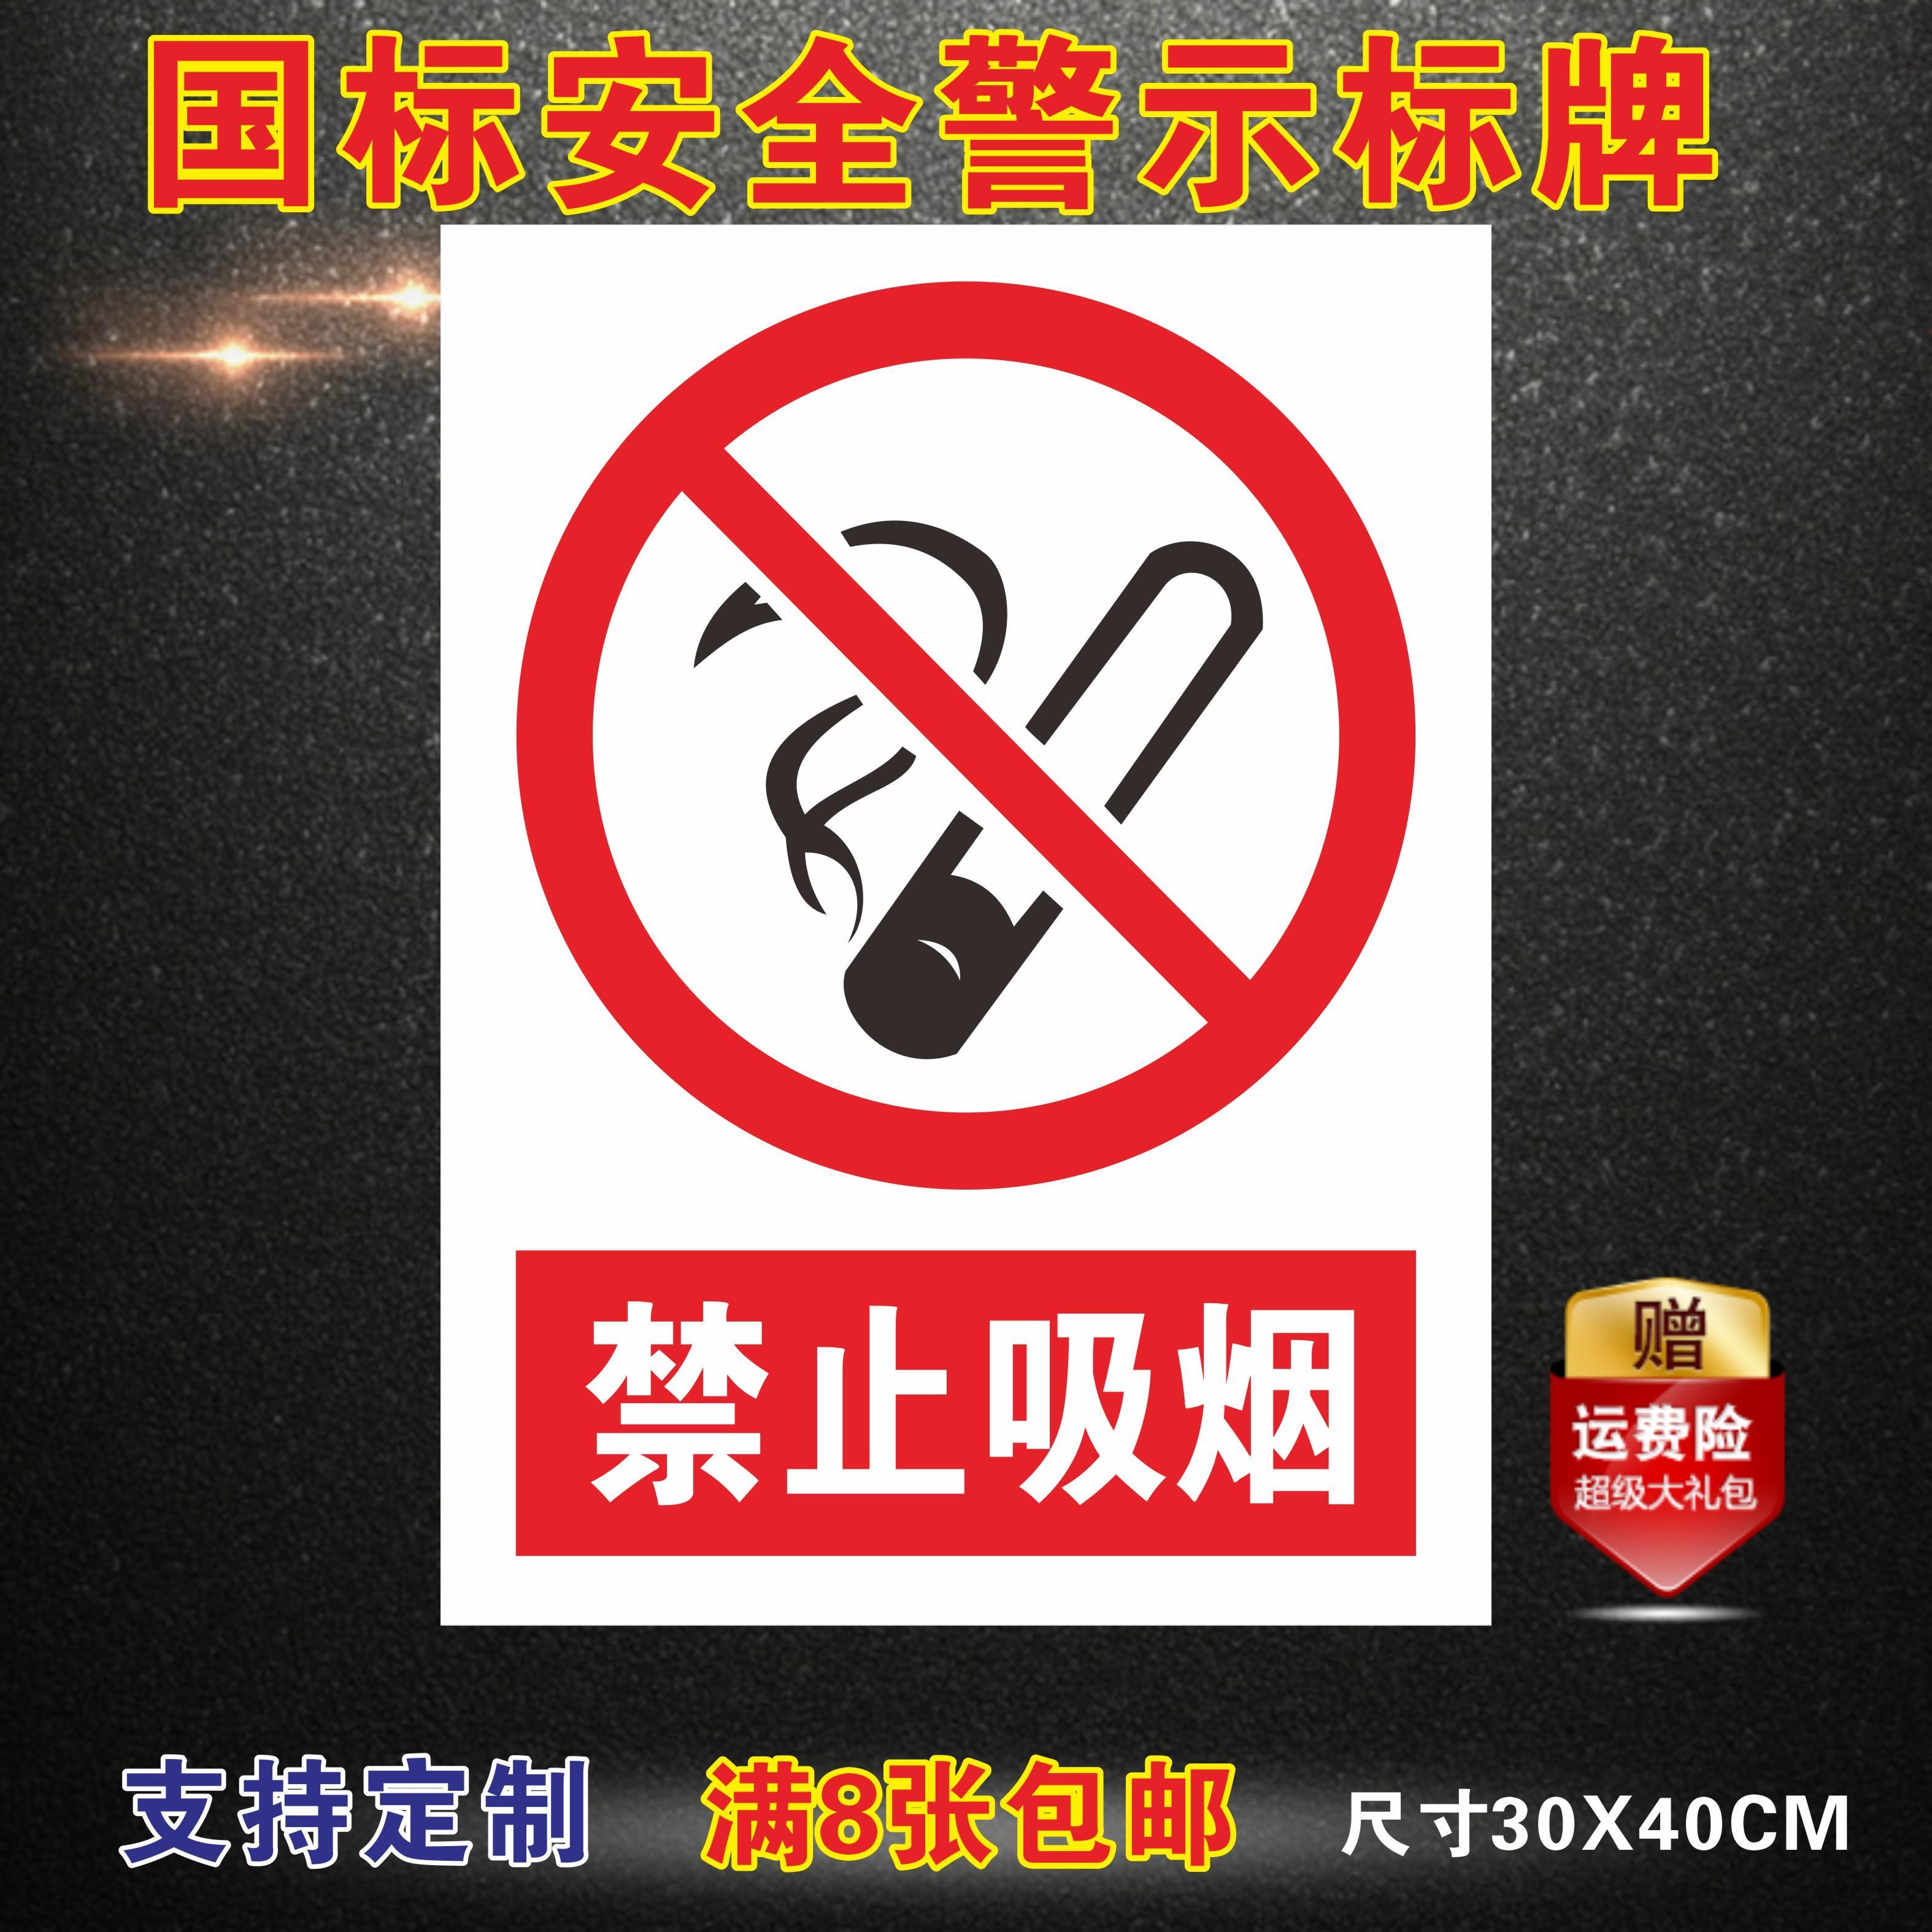 *淘宝天猫禁止吸烟流行产品:*京东商城禁止吸烟流行产品:*永鑫广告